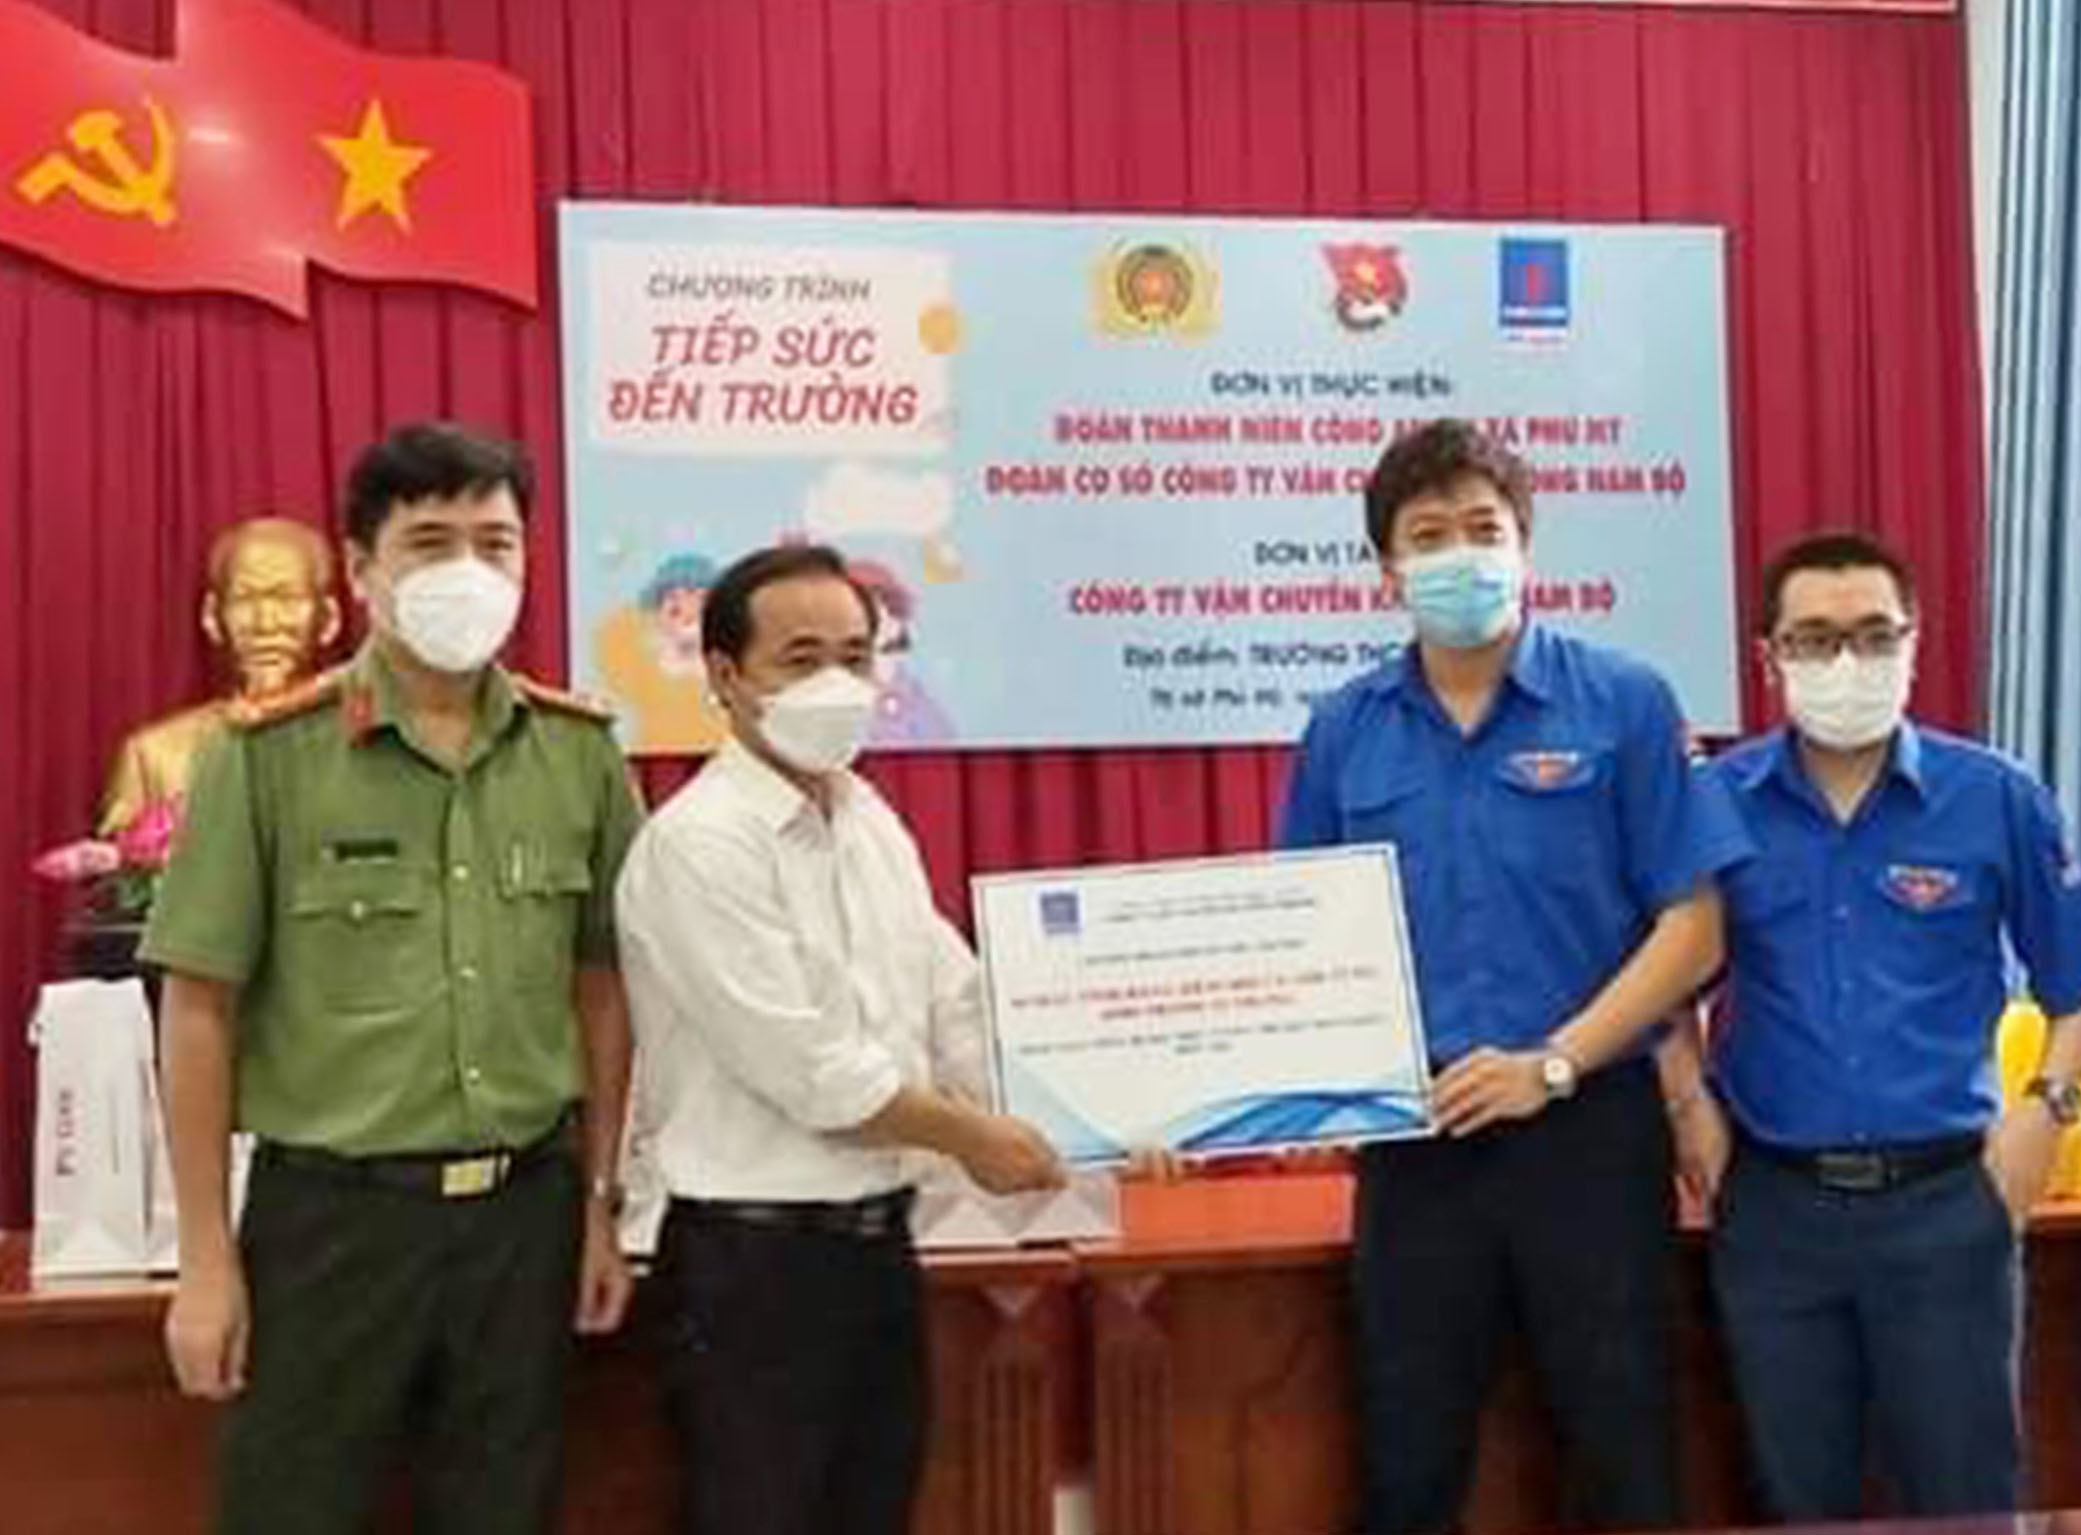 Đoàn cơ sở Công ty khí Đông Nam Bộ tặng máy tính cho đại diện Trường THCS Phước Hòa.